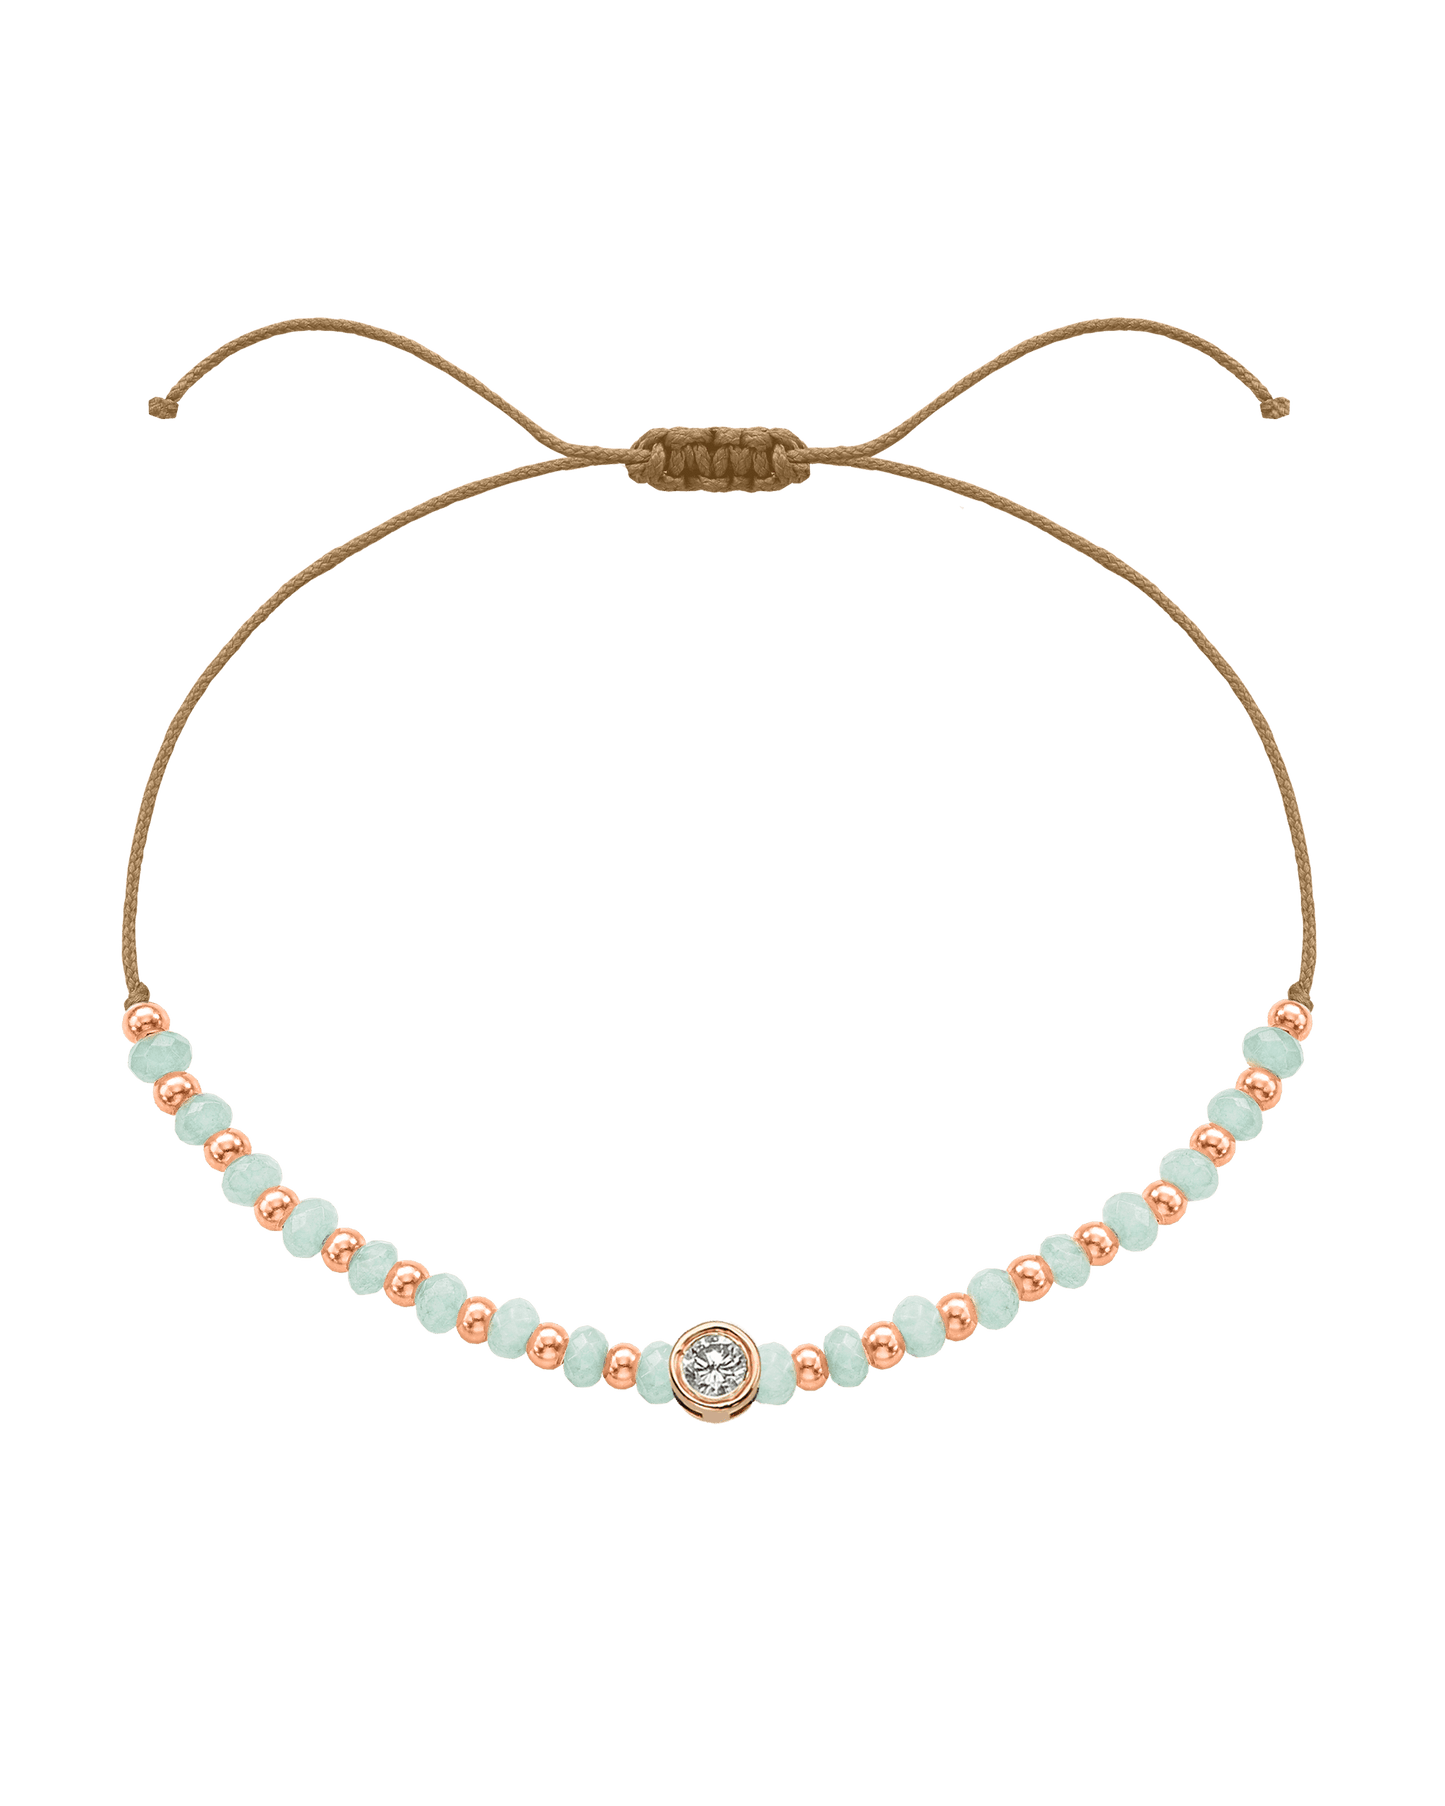 Apatite Gemstone String of Love Bracelet for Inspiration - 14K Rose Gold Bracelets 14K Solid Gold Camel Large: 0.1ct 